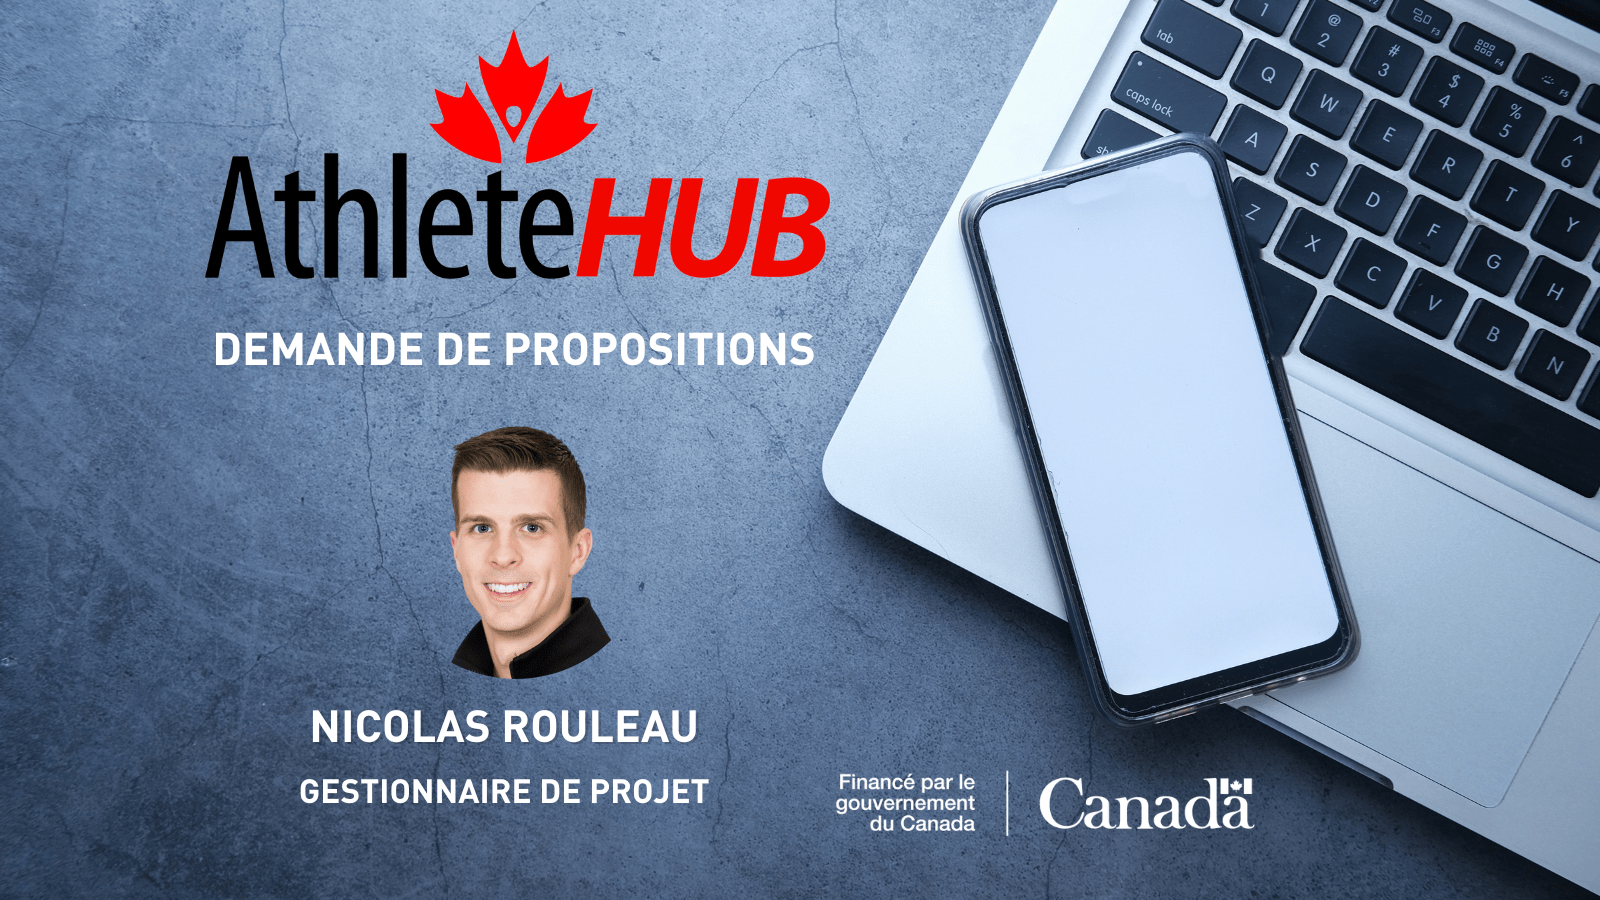 AthlètesCAN lance une demande de propositions et accueille Nicolas Rouleau en tant que gestionnaire de projet pour l’initiative AthleteHUB